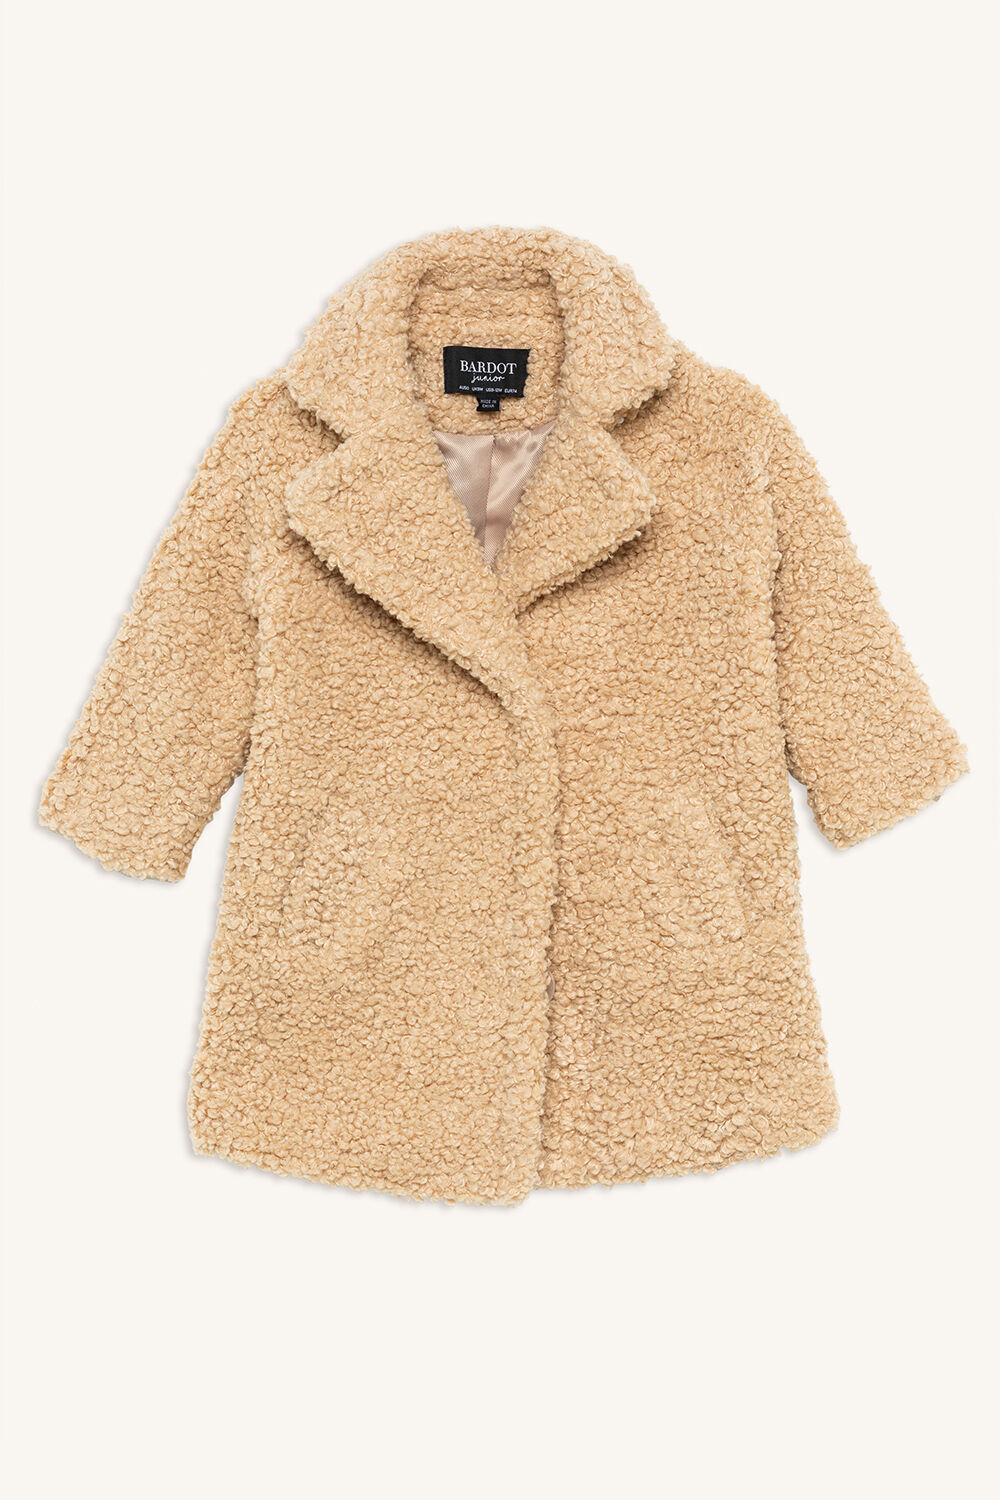 Izzy Long Coat | Girls 000-2 Coats & Jackets | Bardot Junior